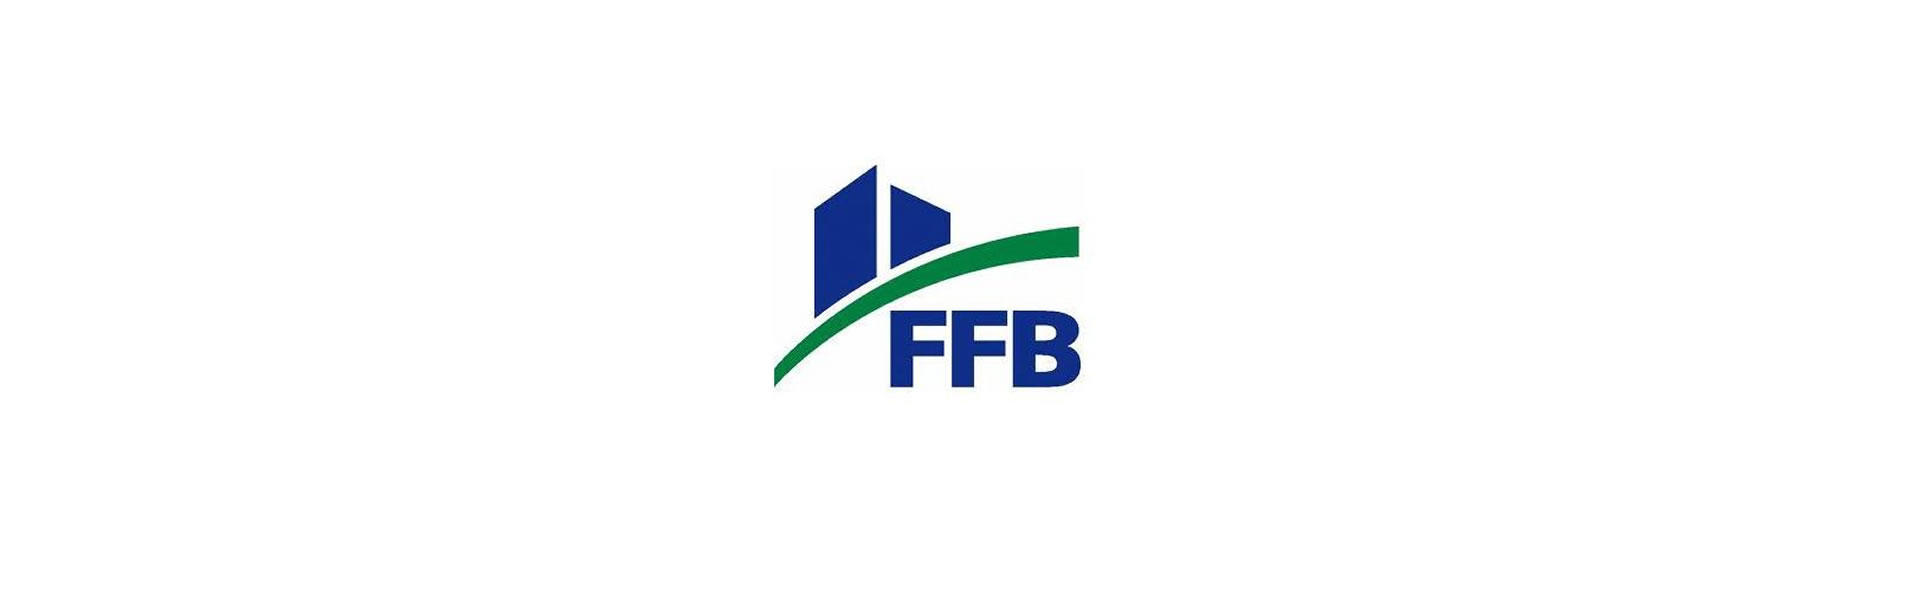 Organisation FFB : le syndicat du batiment pour artisans et